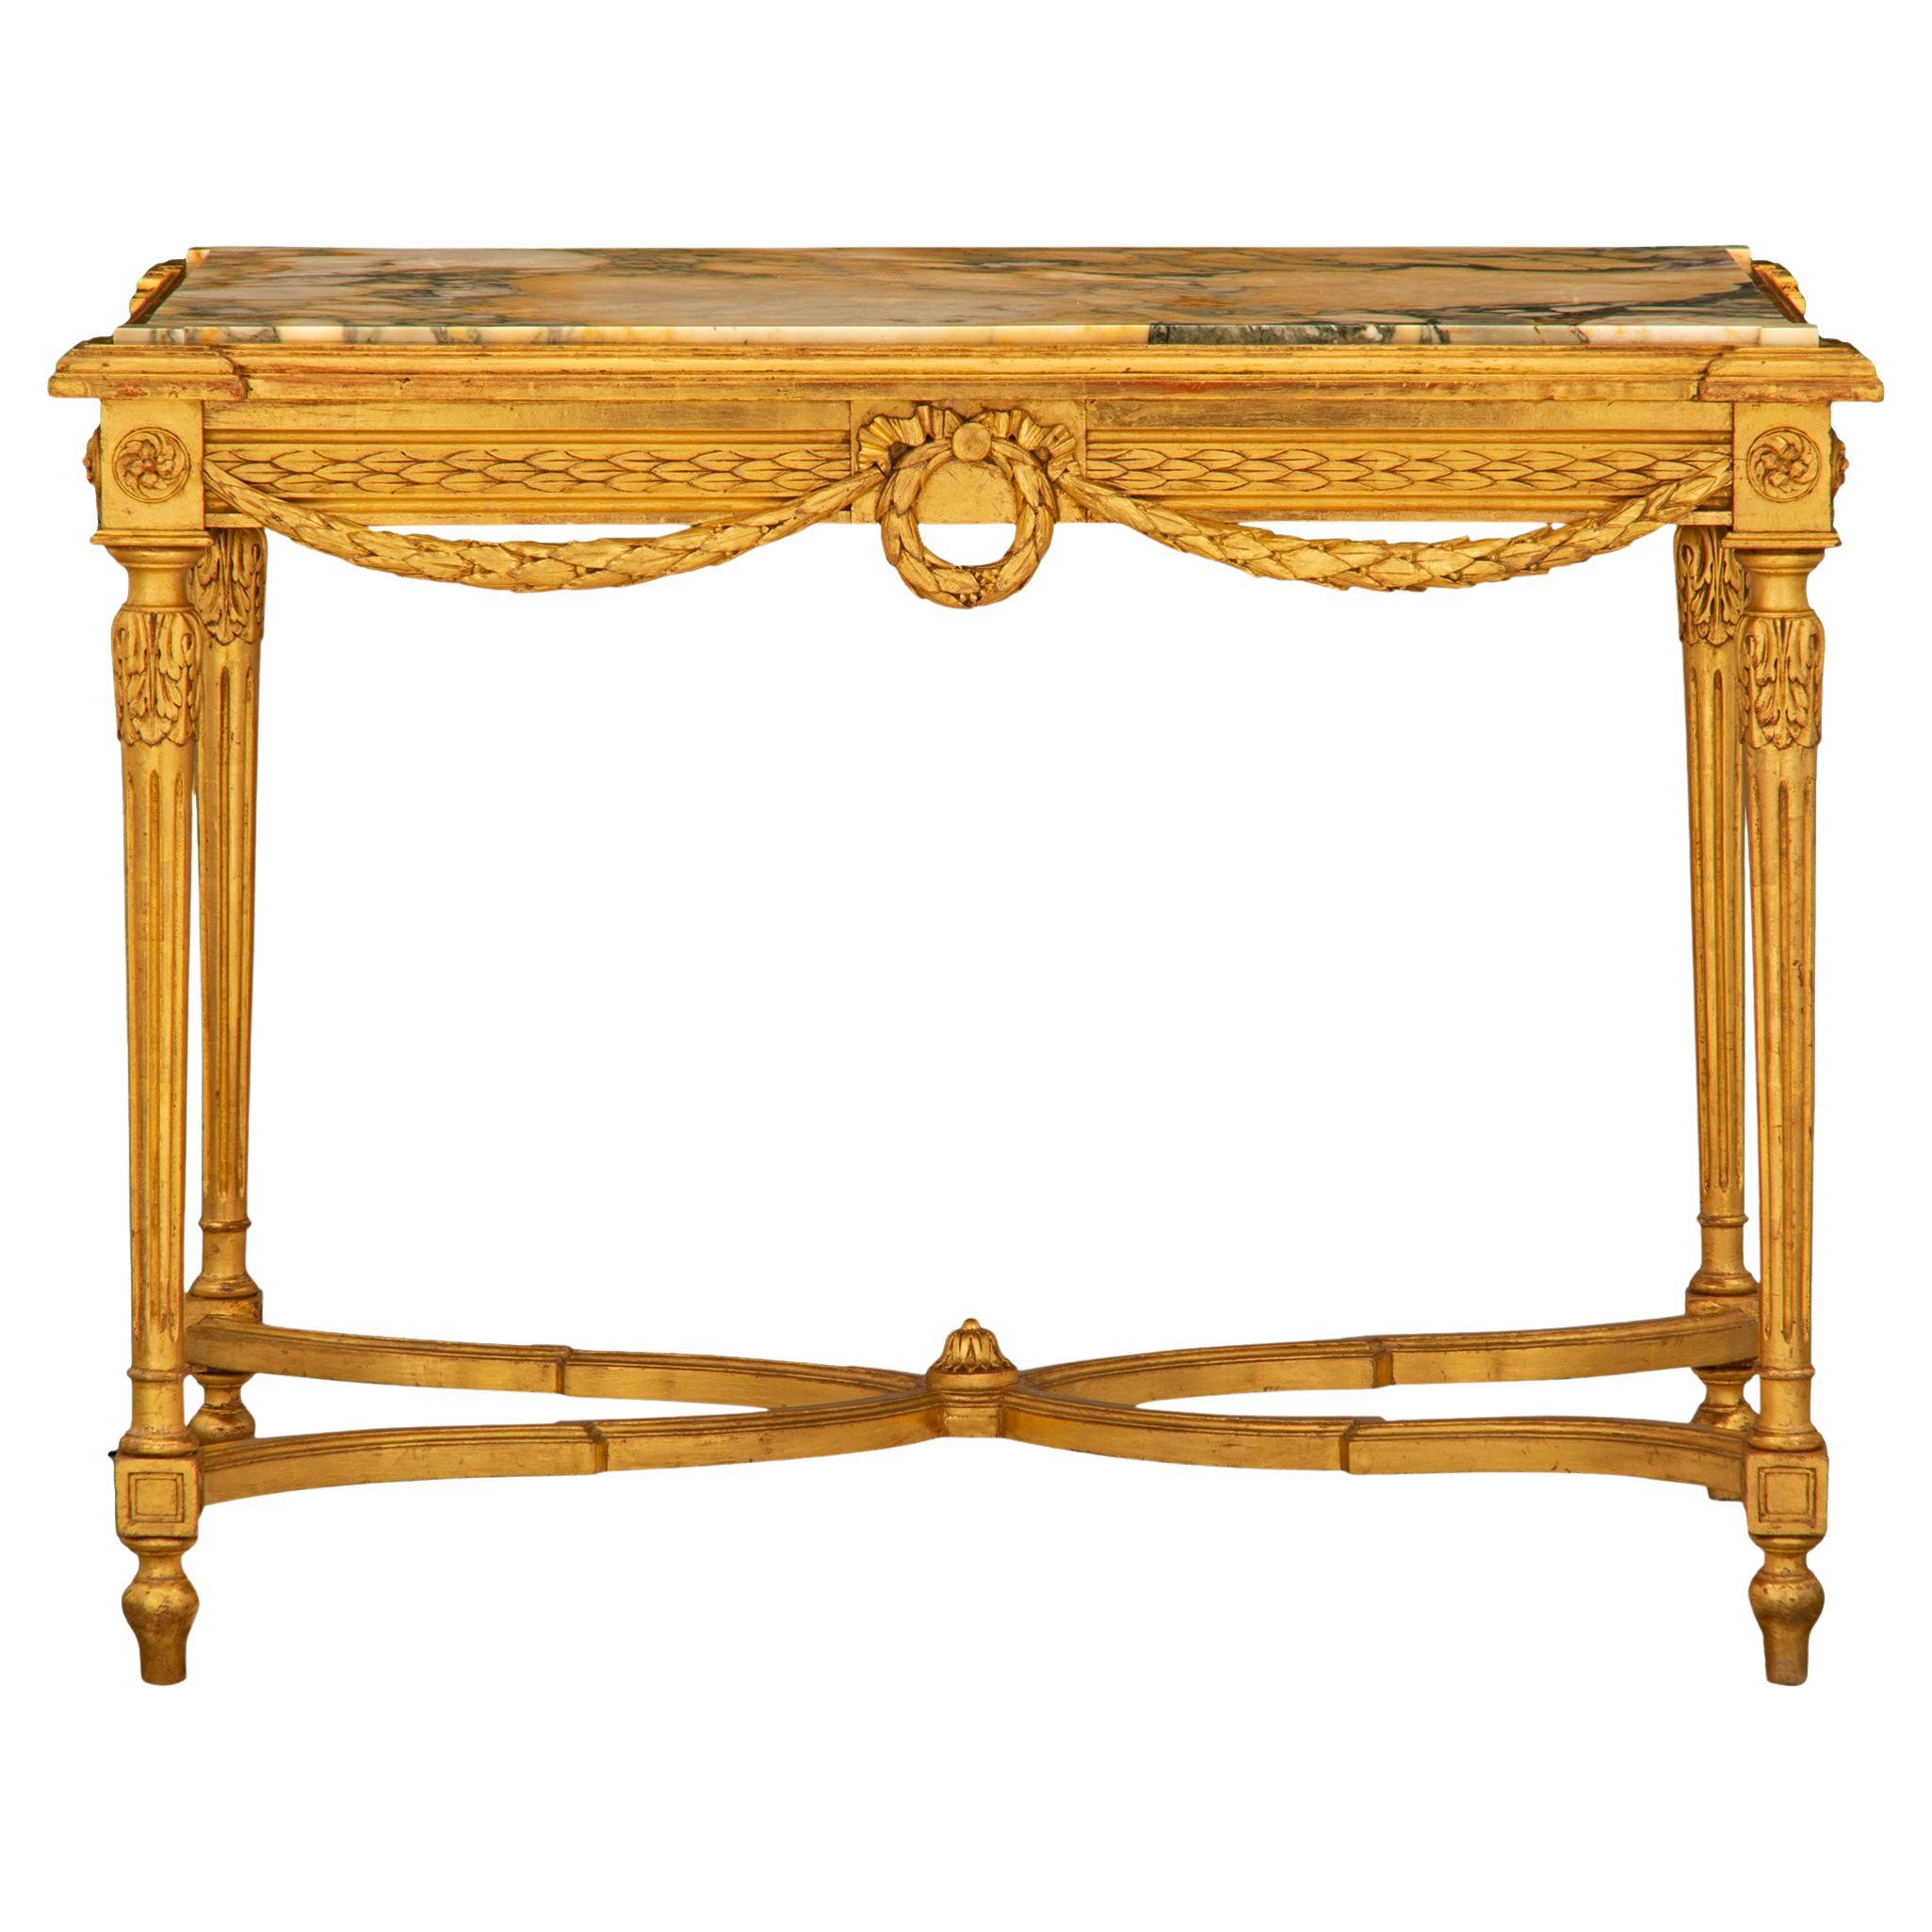 Centre de table en bois doré de style Louis XVI du XIXe siècle français